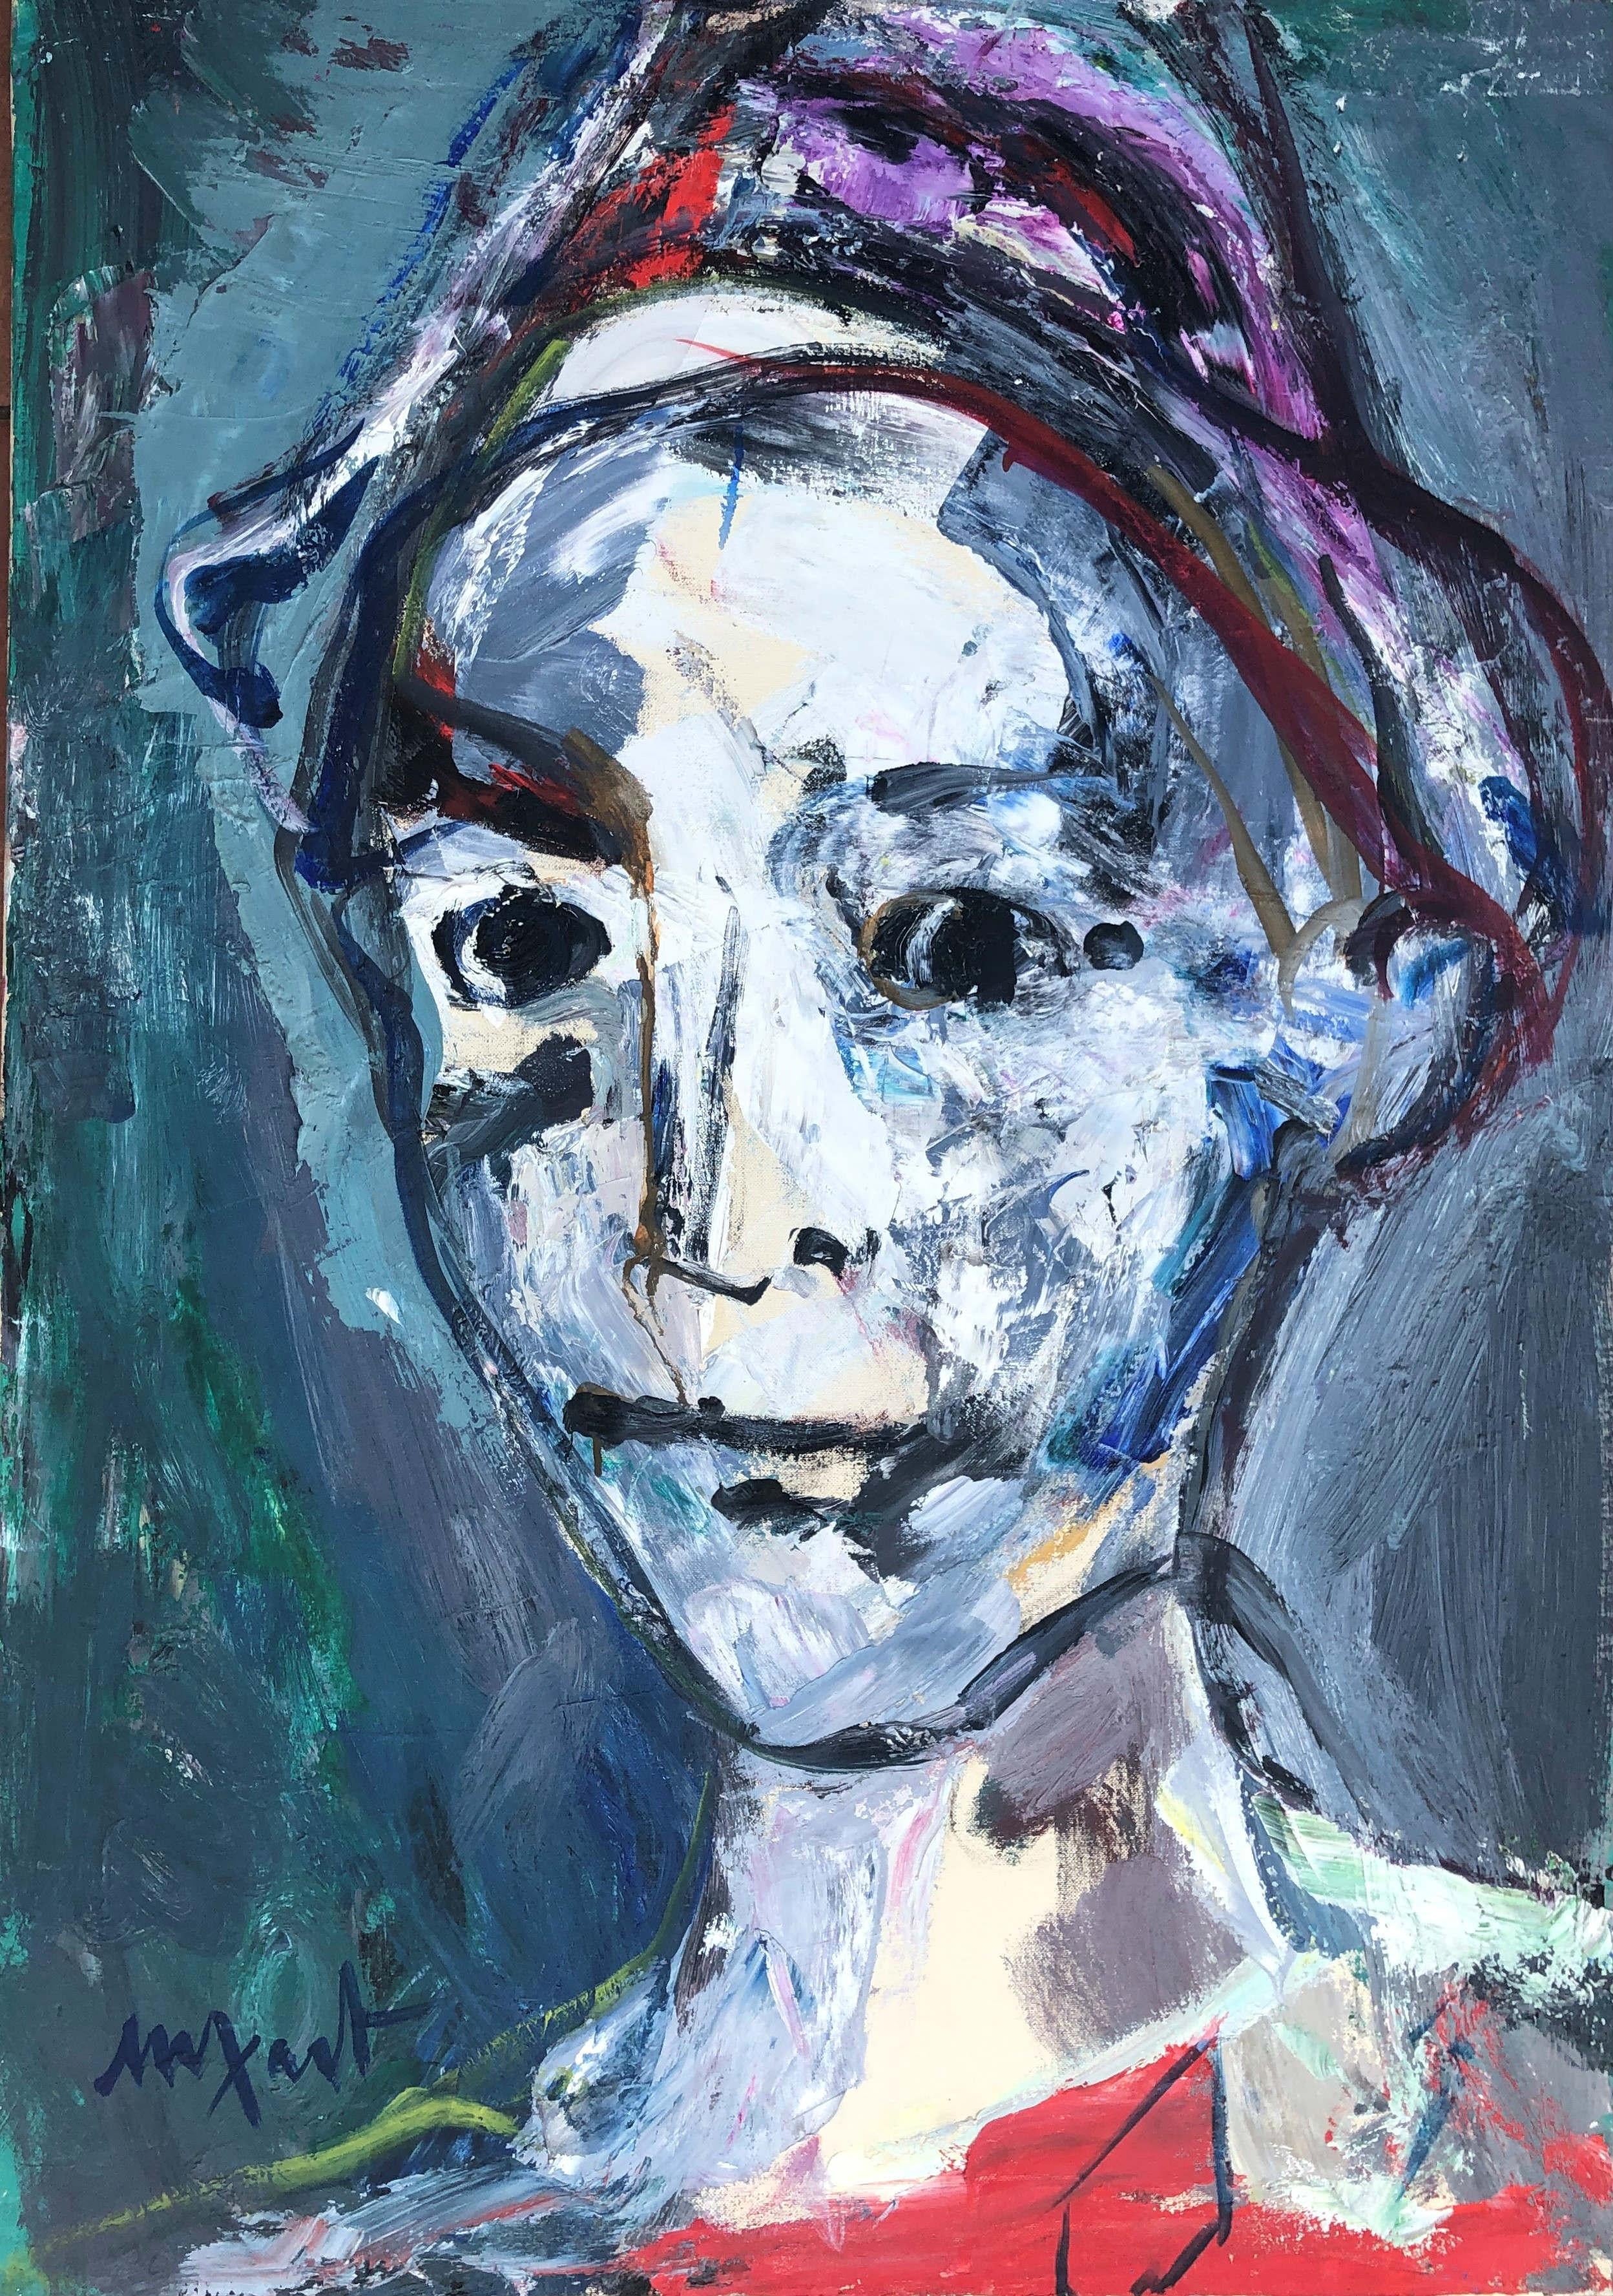 Jaume Muxart Domenech Portrait Painting - Clown portrait original oil on canvas painting c.1980